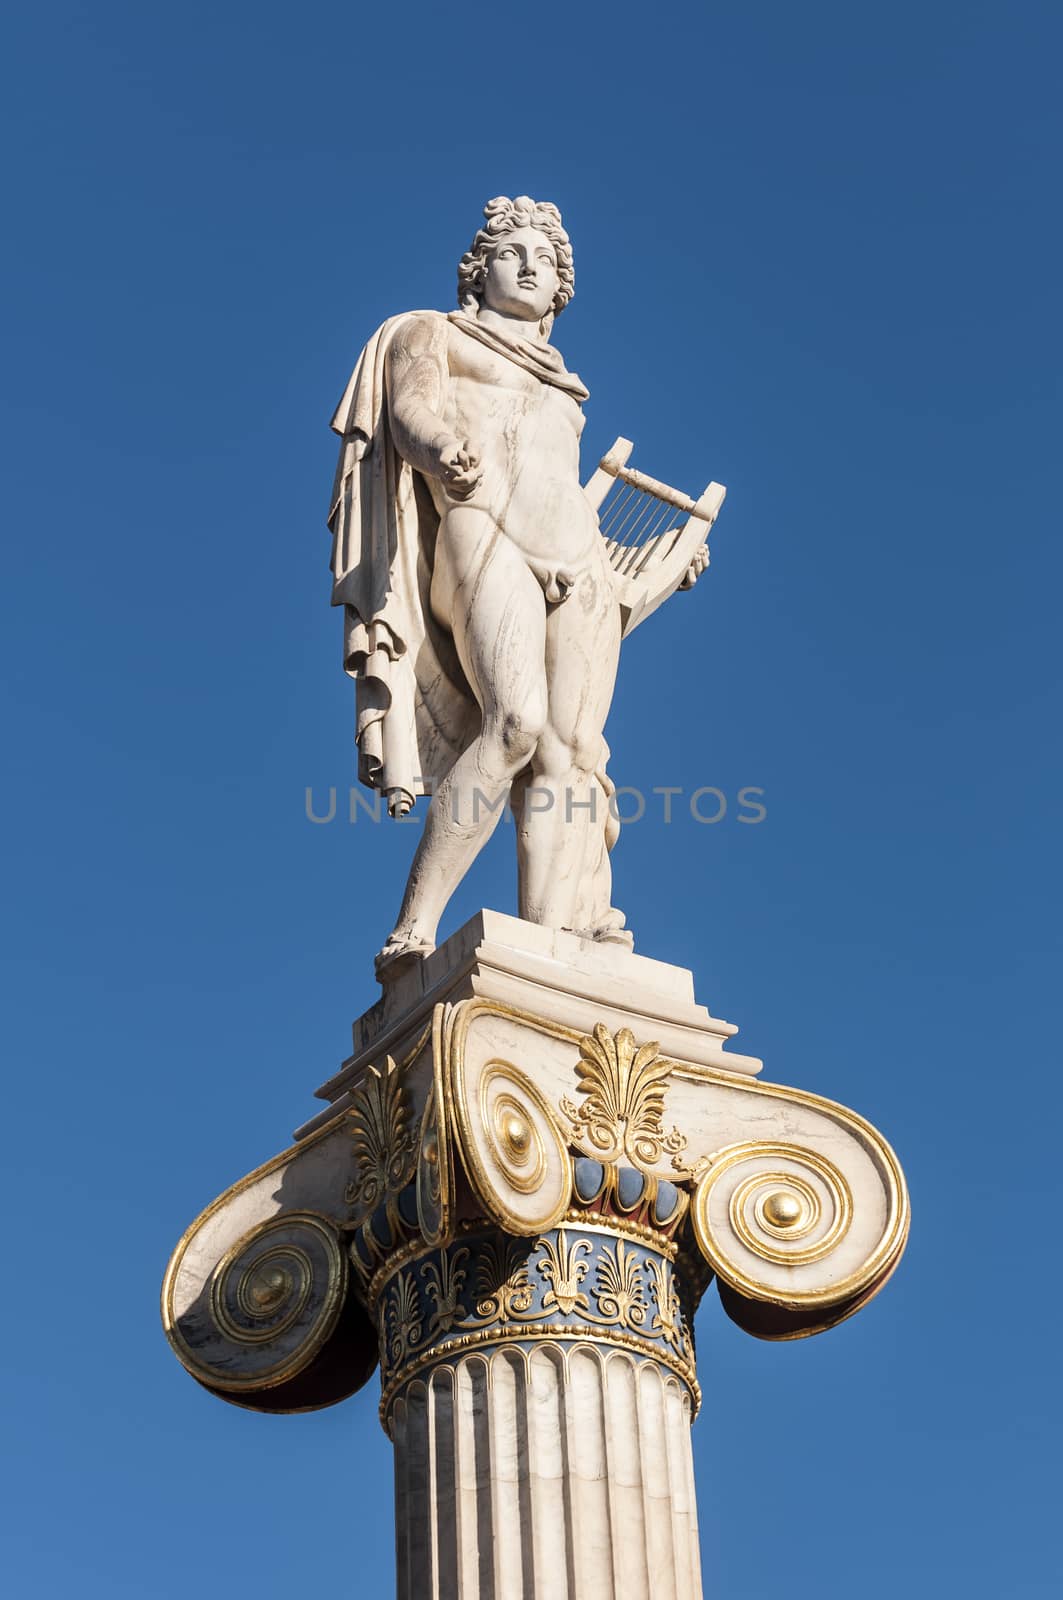 classic Apollo god statue by vangelis